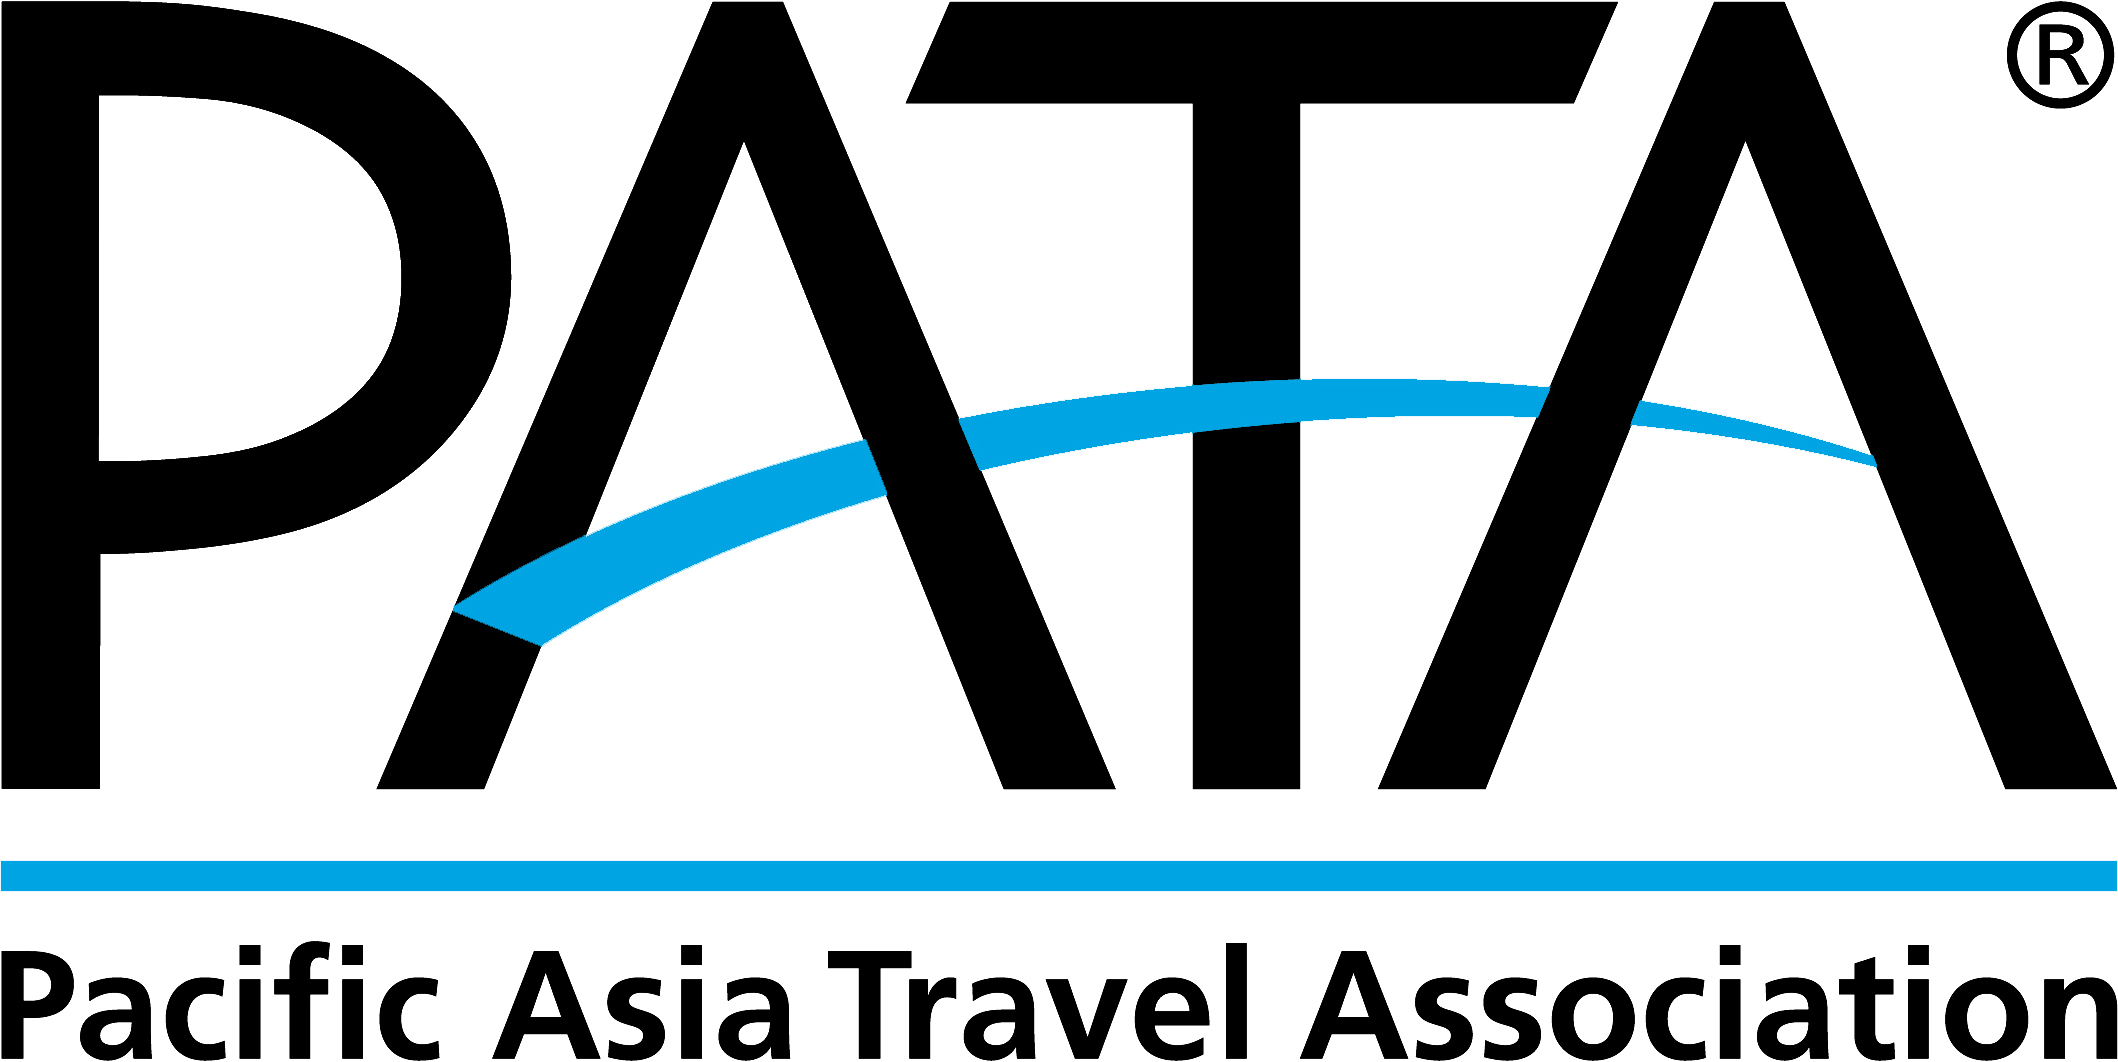 Asian ports association pilot responsibilities